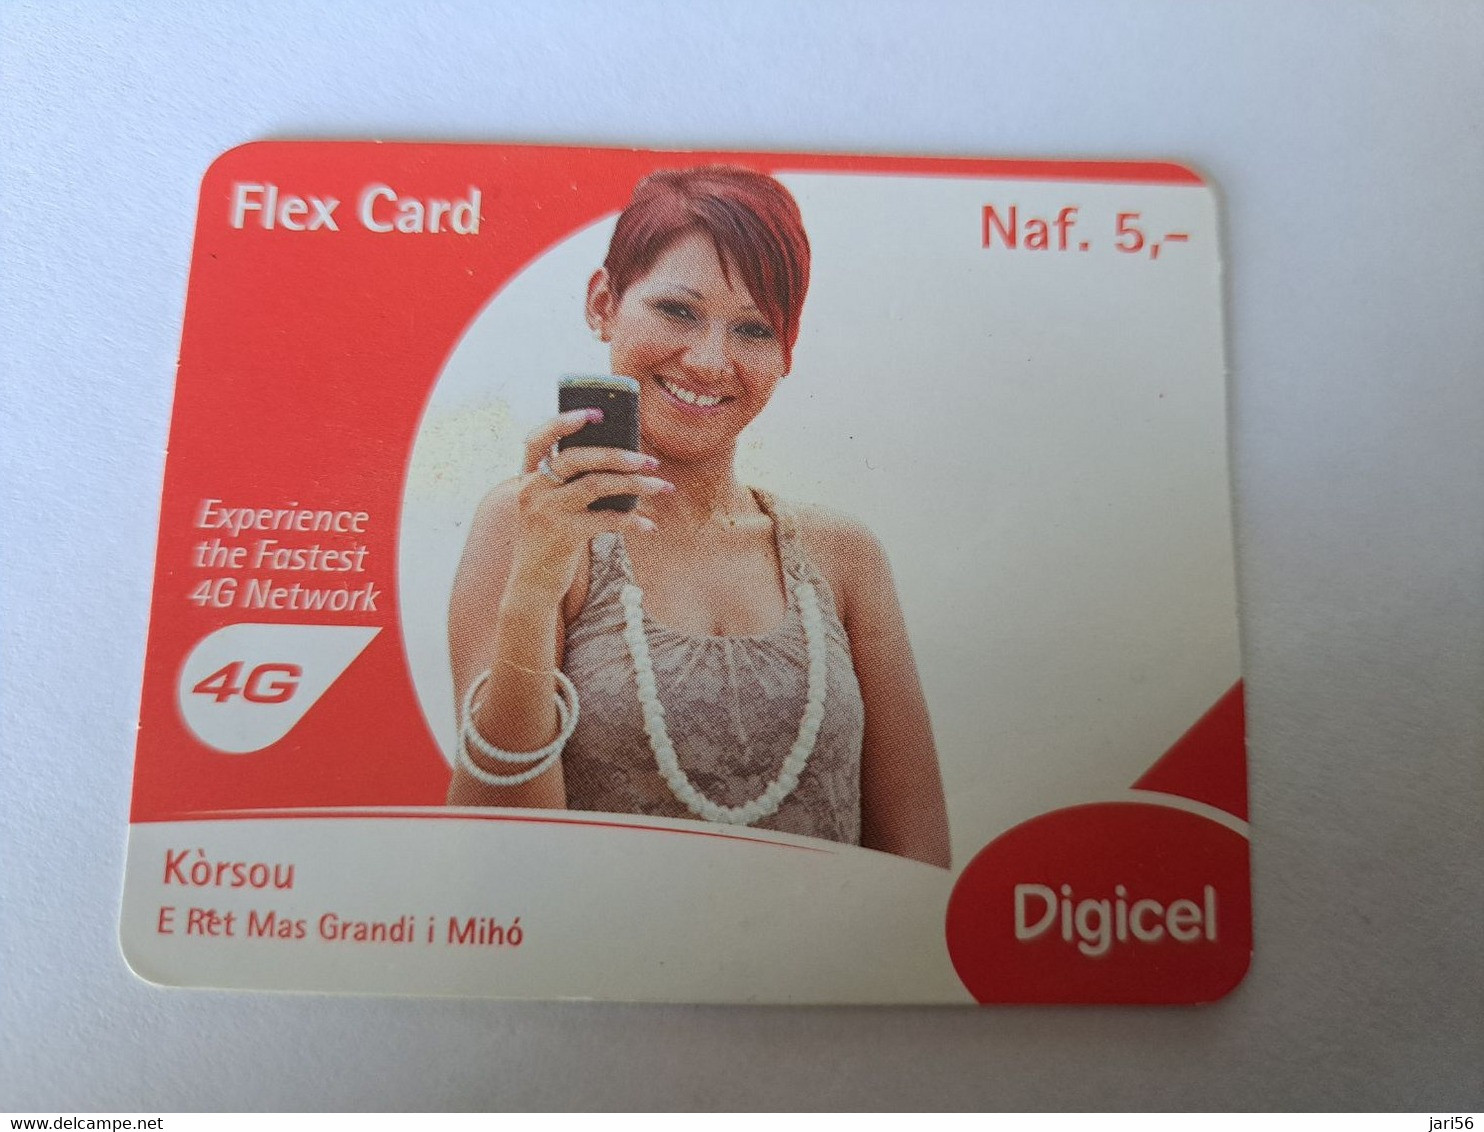 CURACAO  DIGICEL FLEX CARD  NAF 5,-  LADY ON PHONE    DATE 30/06/2013   VERY FINE USED CARD        ** 12087** - Antilles (Neérlandaises)